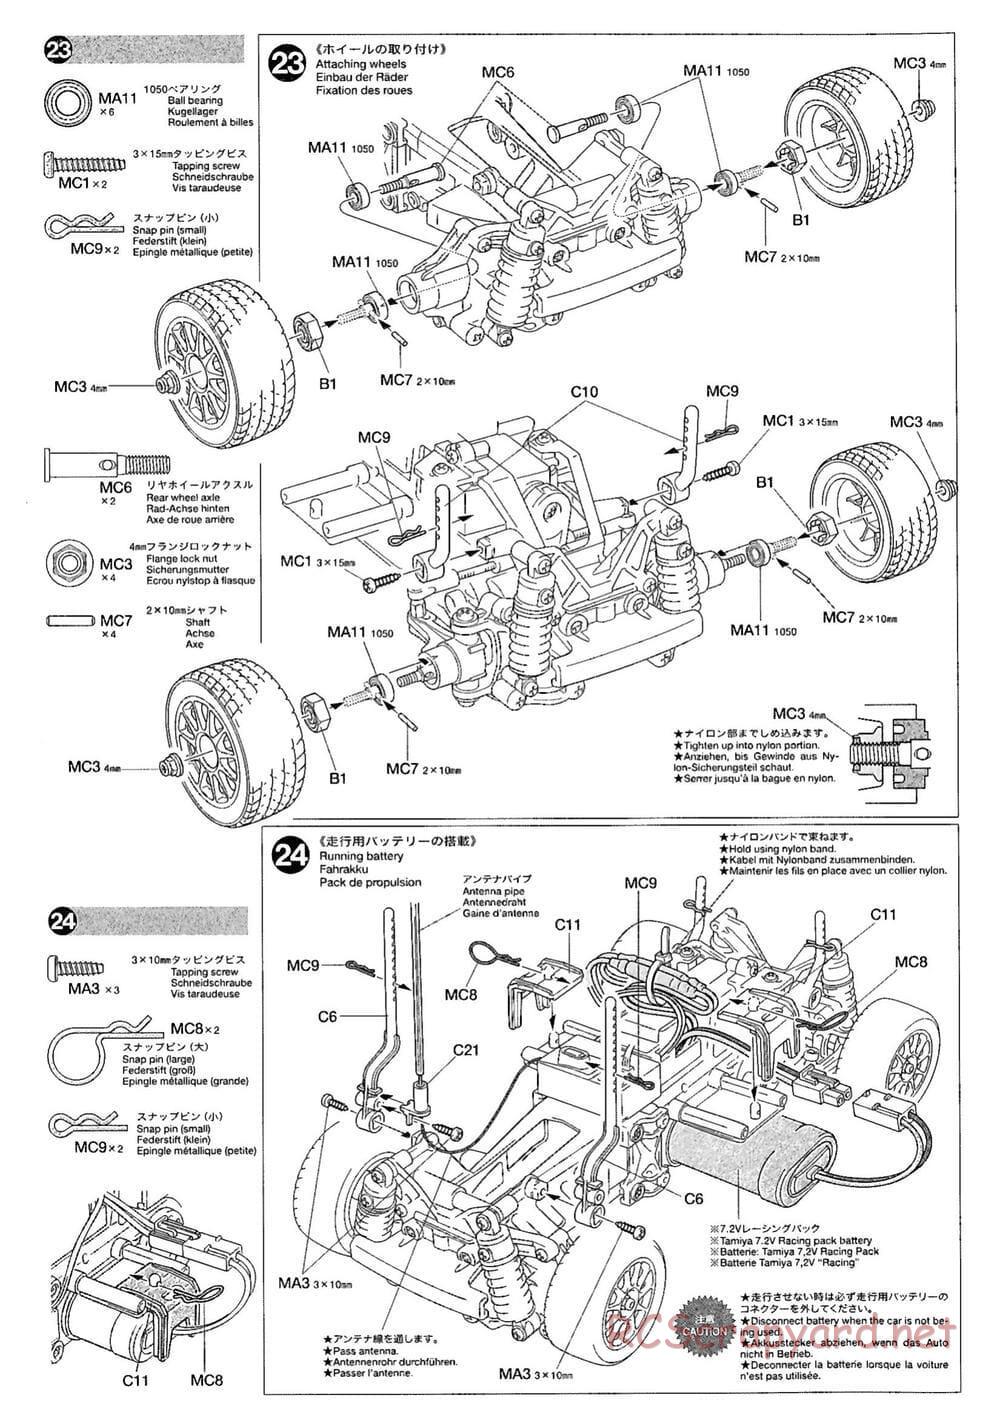 Tamiya - M-03M Chassis - Manual - Page 12